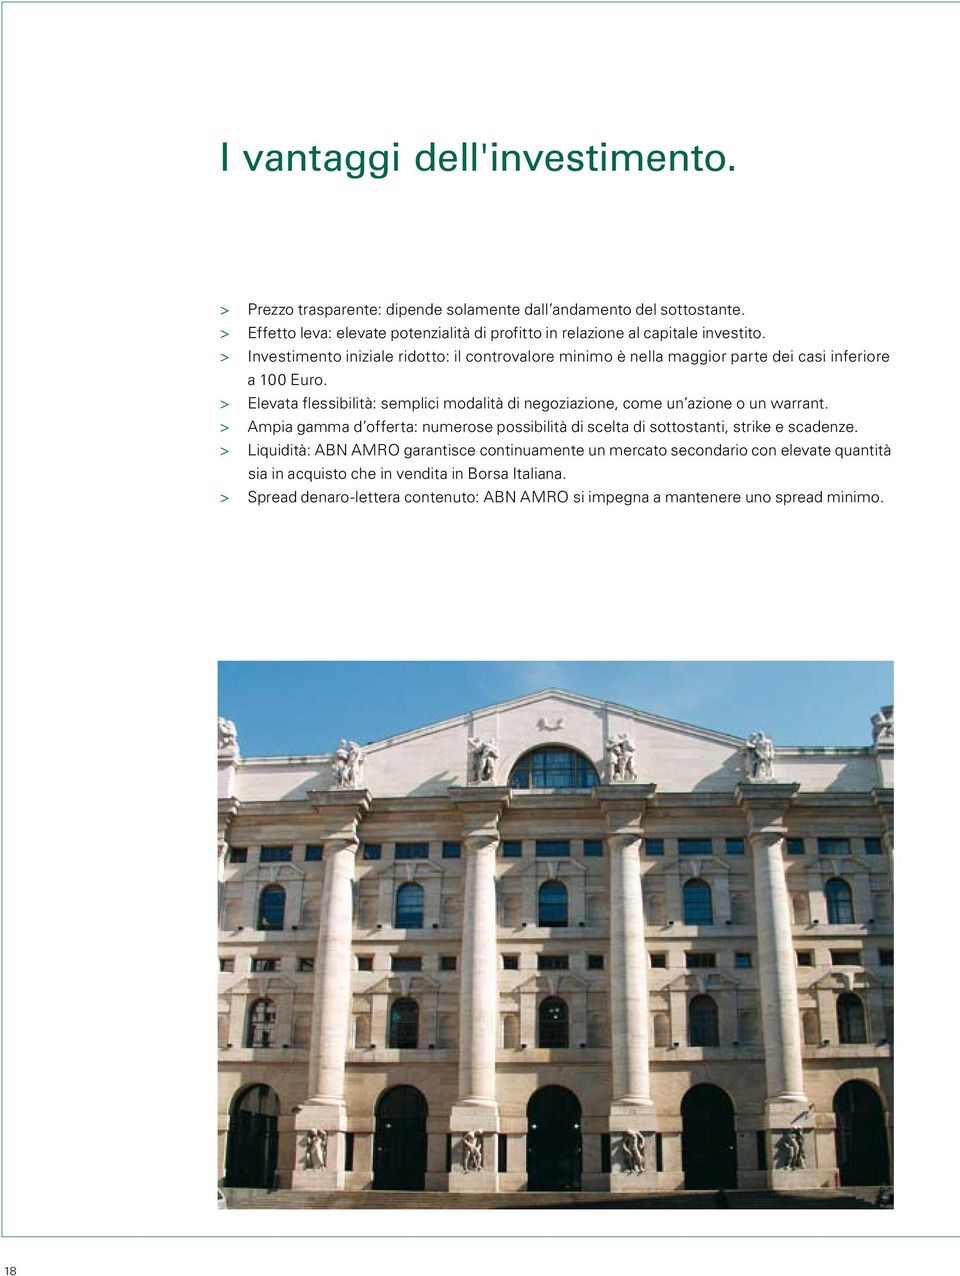 > Investimento iniziale ridotto: il controvalore minimo è nella maggior parte dei casi inferiore a 100 Euro.